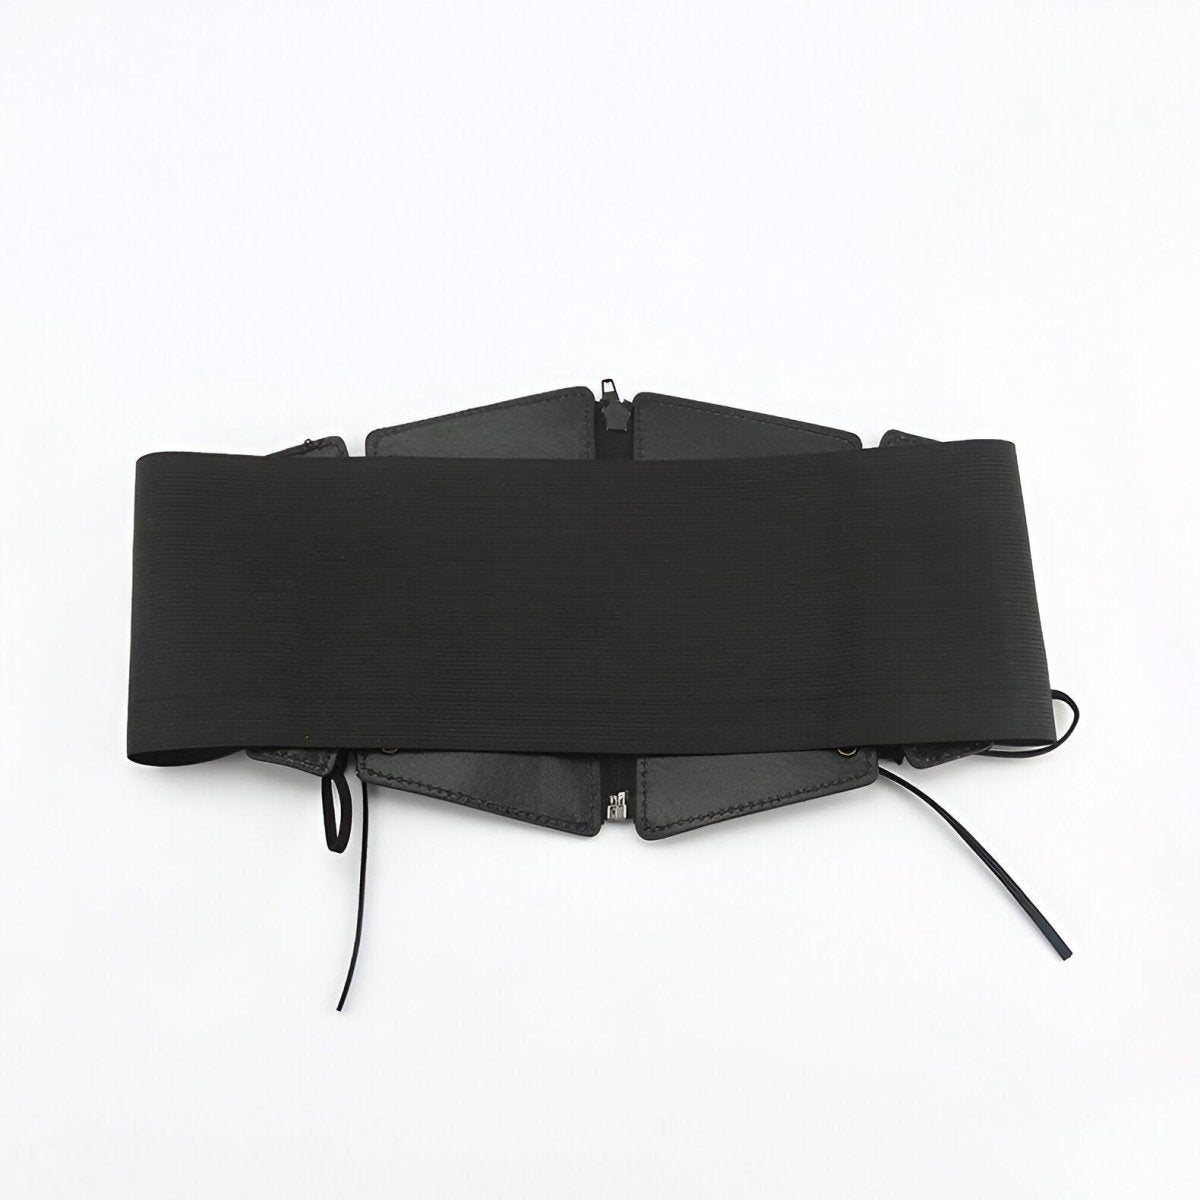 Ceinture corset à fermeture éclair et lacets sur les côtés, modèle Lexy - La Boutique de la Ceinture